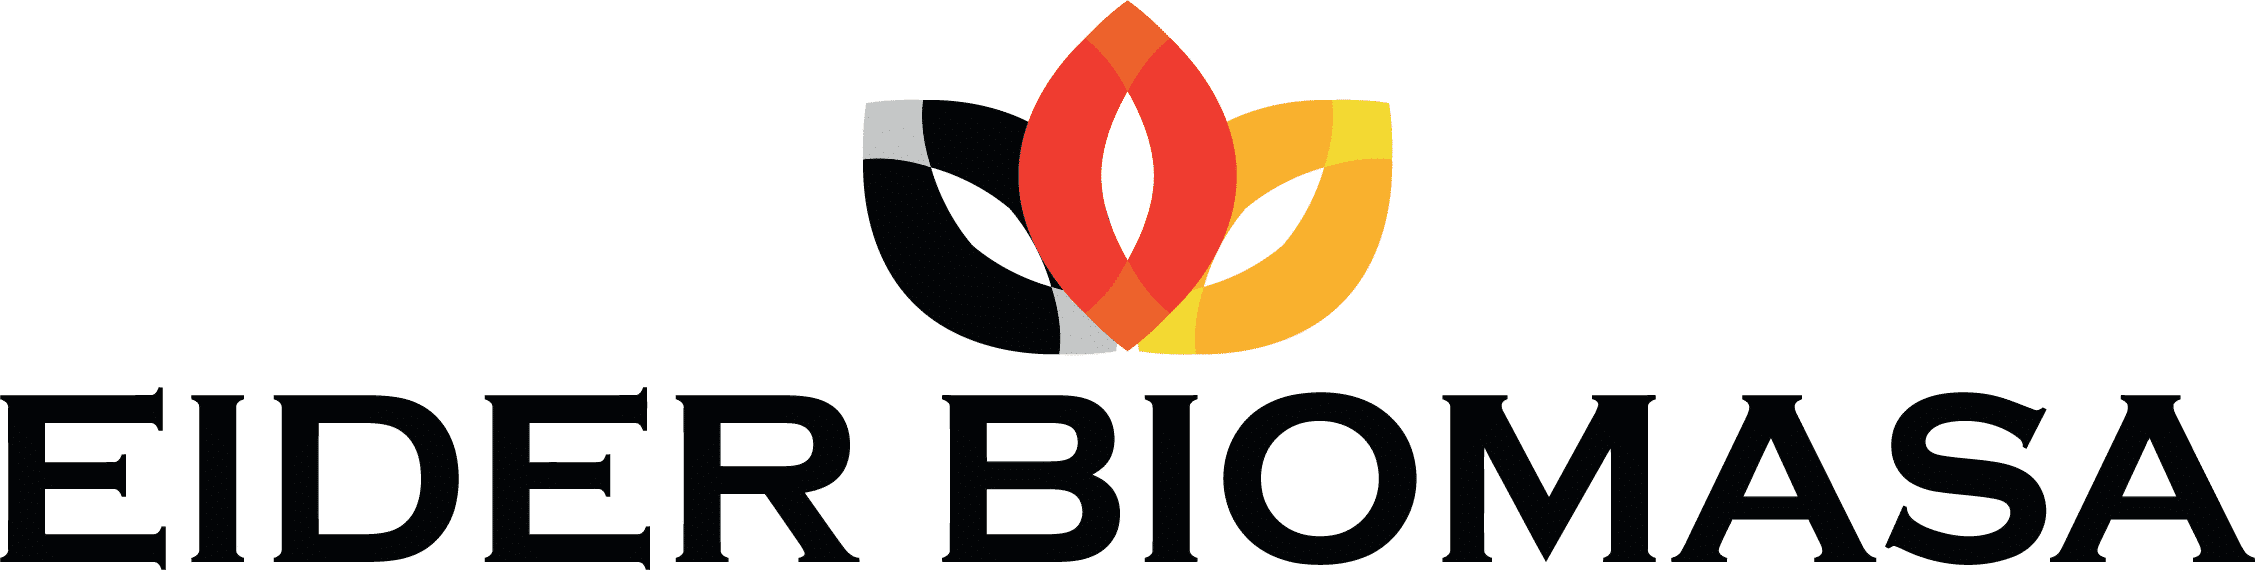 logo eider biomasa